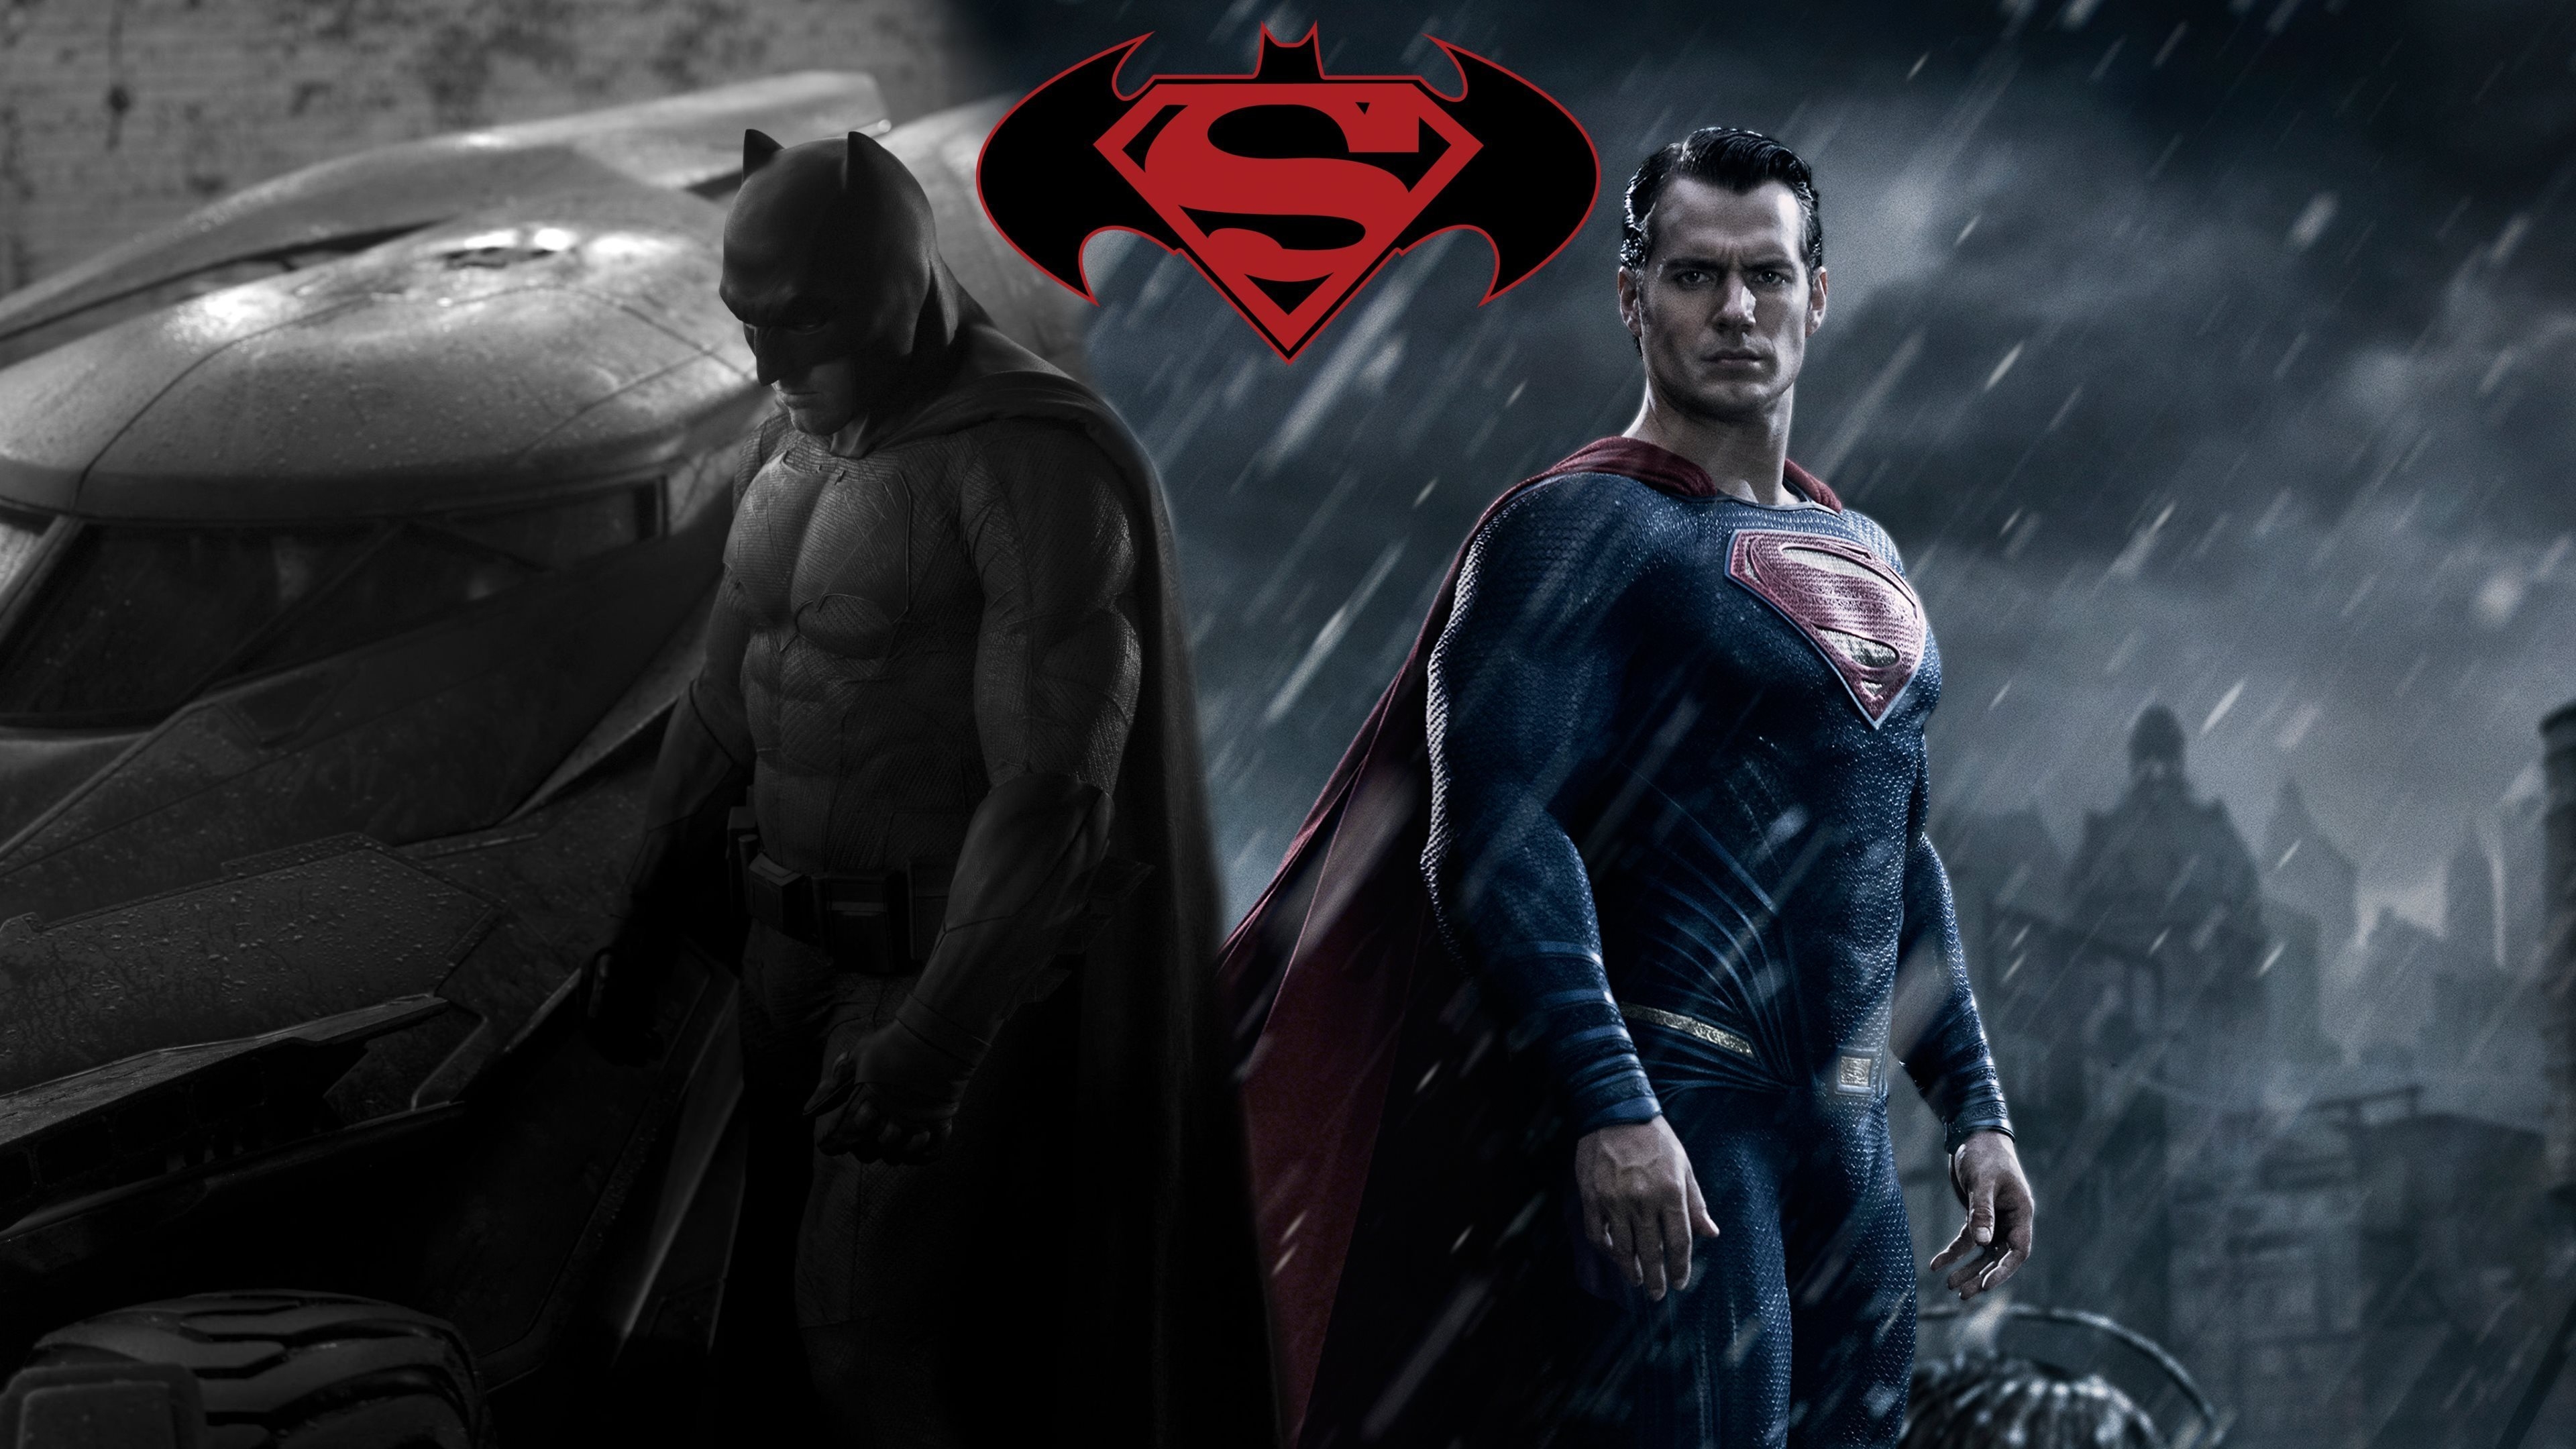 Batman vs Superman Fan Art for 3840 x 2160 Ultra HD resolution